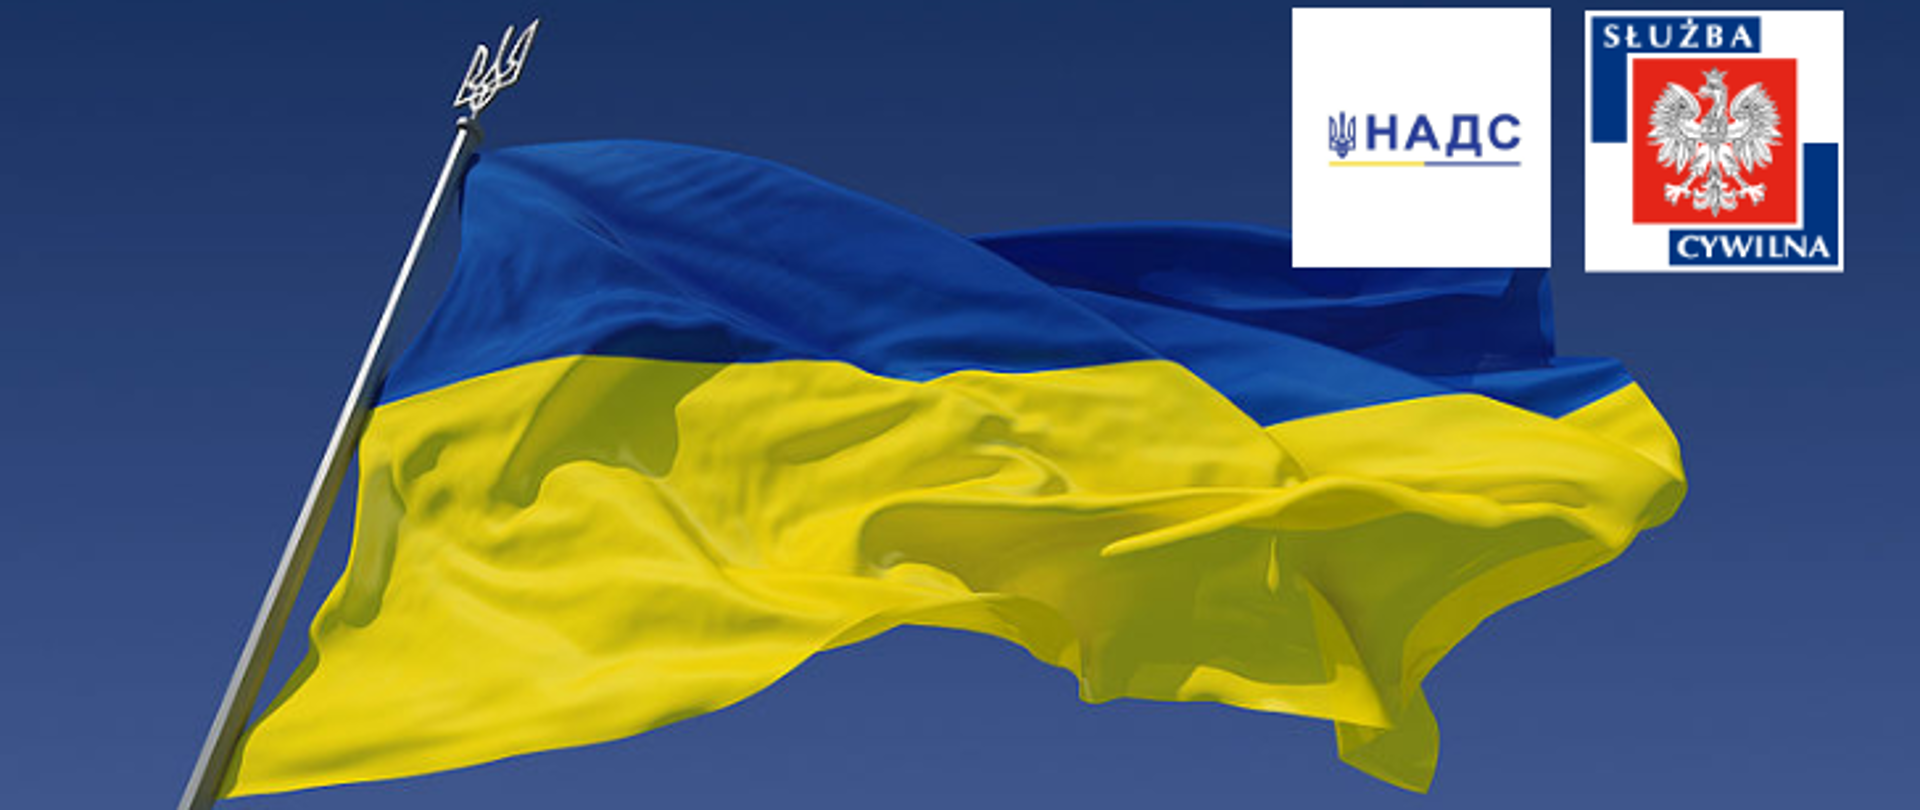 Flaga Ukrainy powiewająca na tle nieba. W prawym górnym rogu logo polskiej służby cywilnej